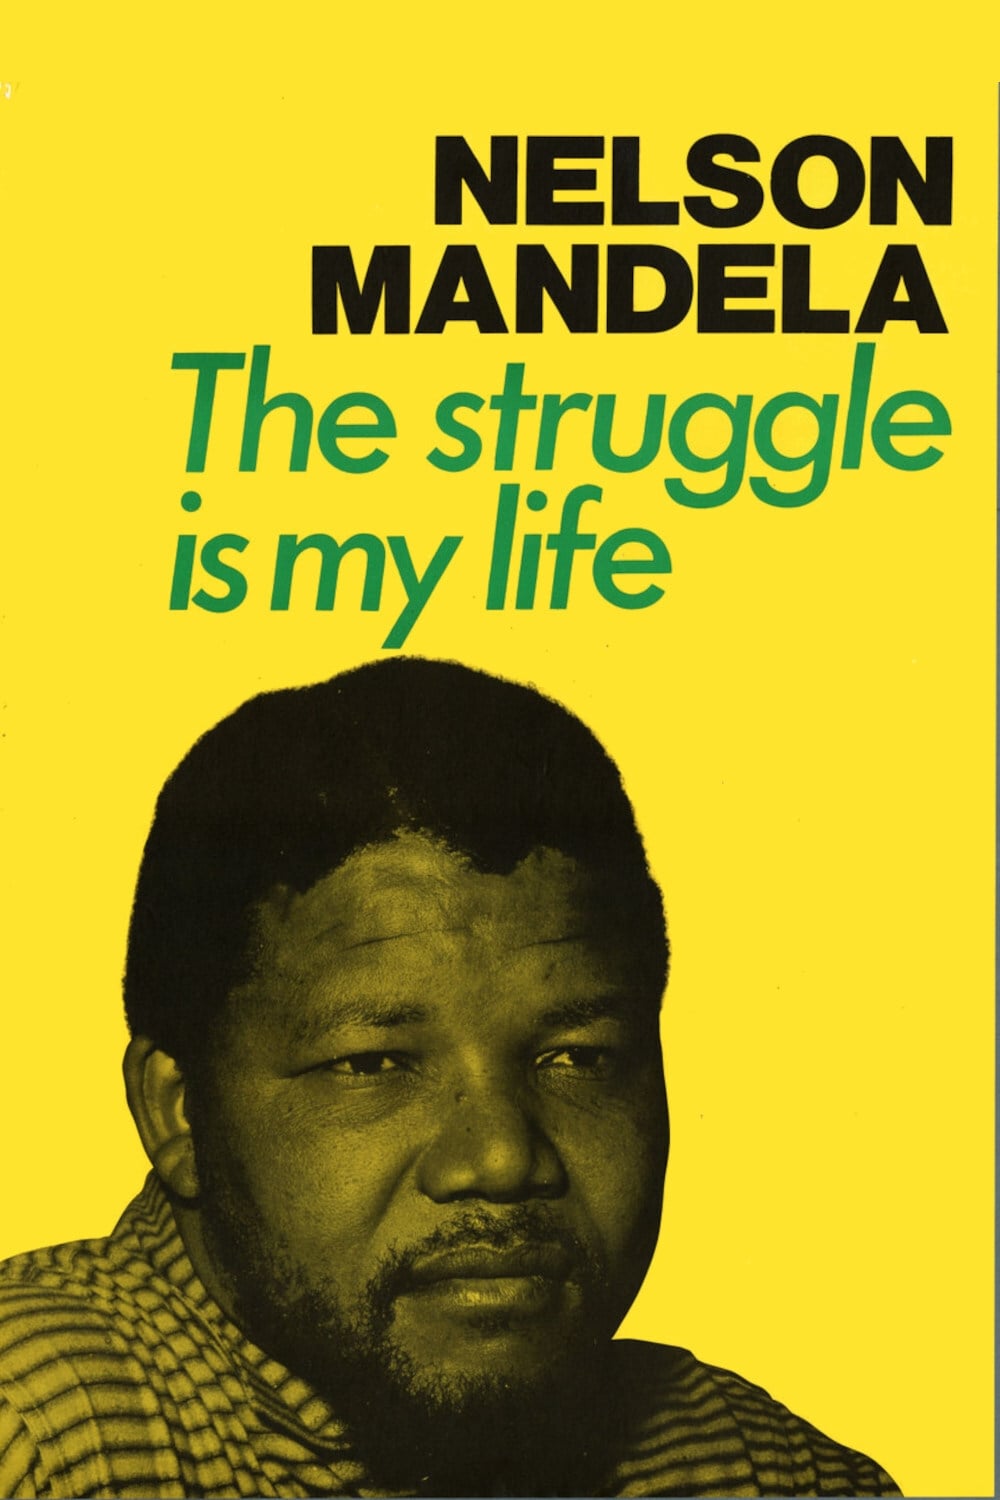 The Struggle Is My Life: Nelson Mandela 1918 - 2013